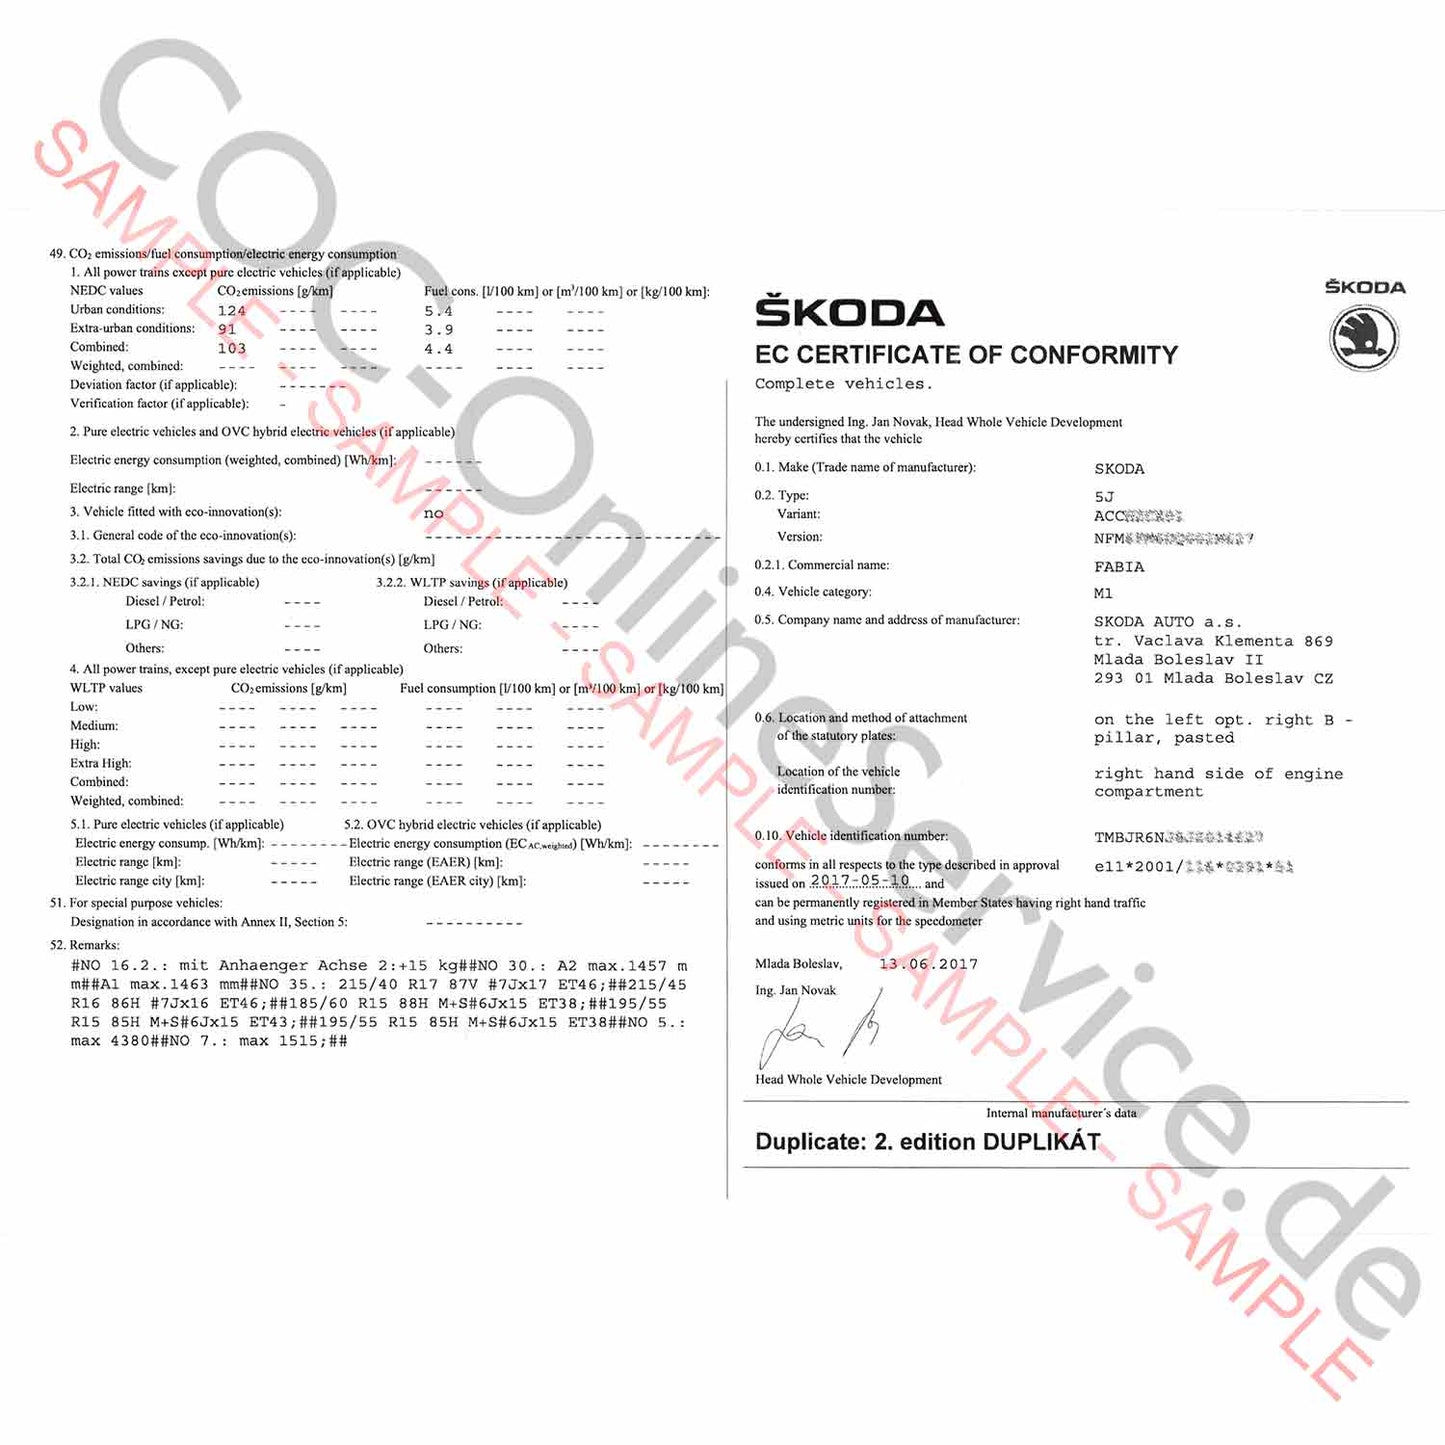 Documento COC para Skoda (Certificado de Conformidad)